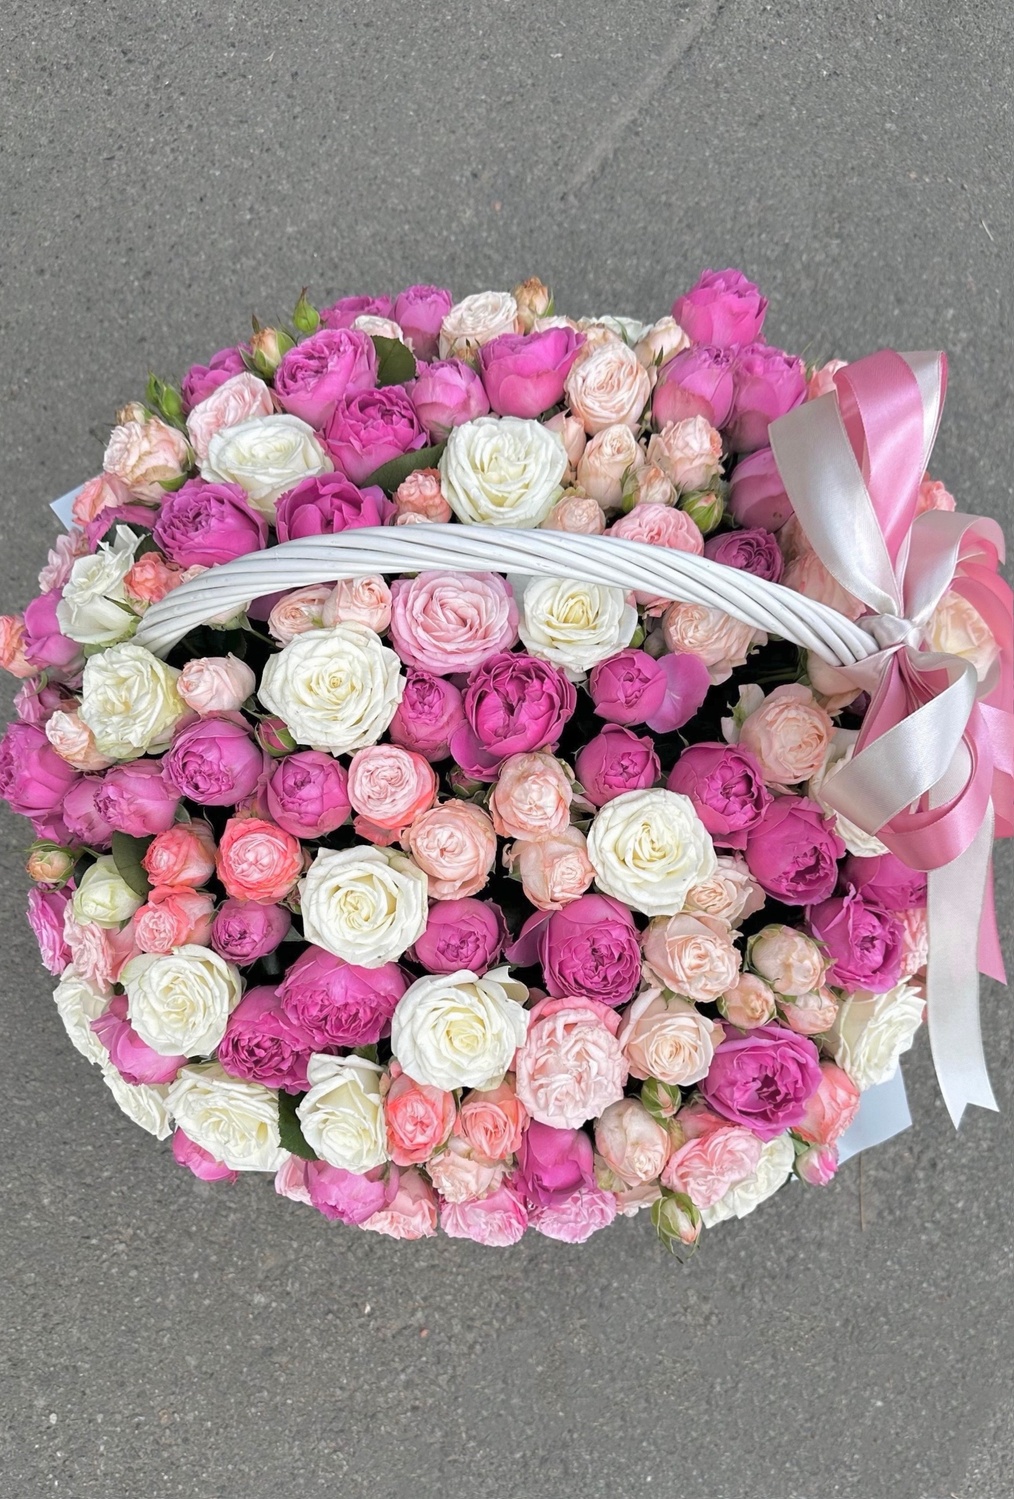 49 веток кустовых роз в корзине XL "Идеальный подарок"